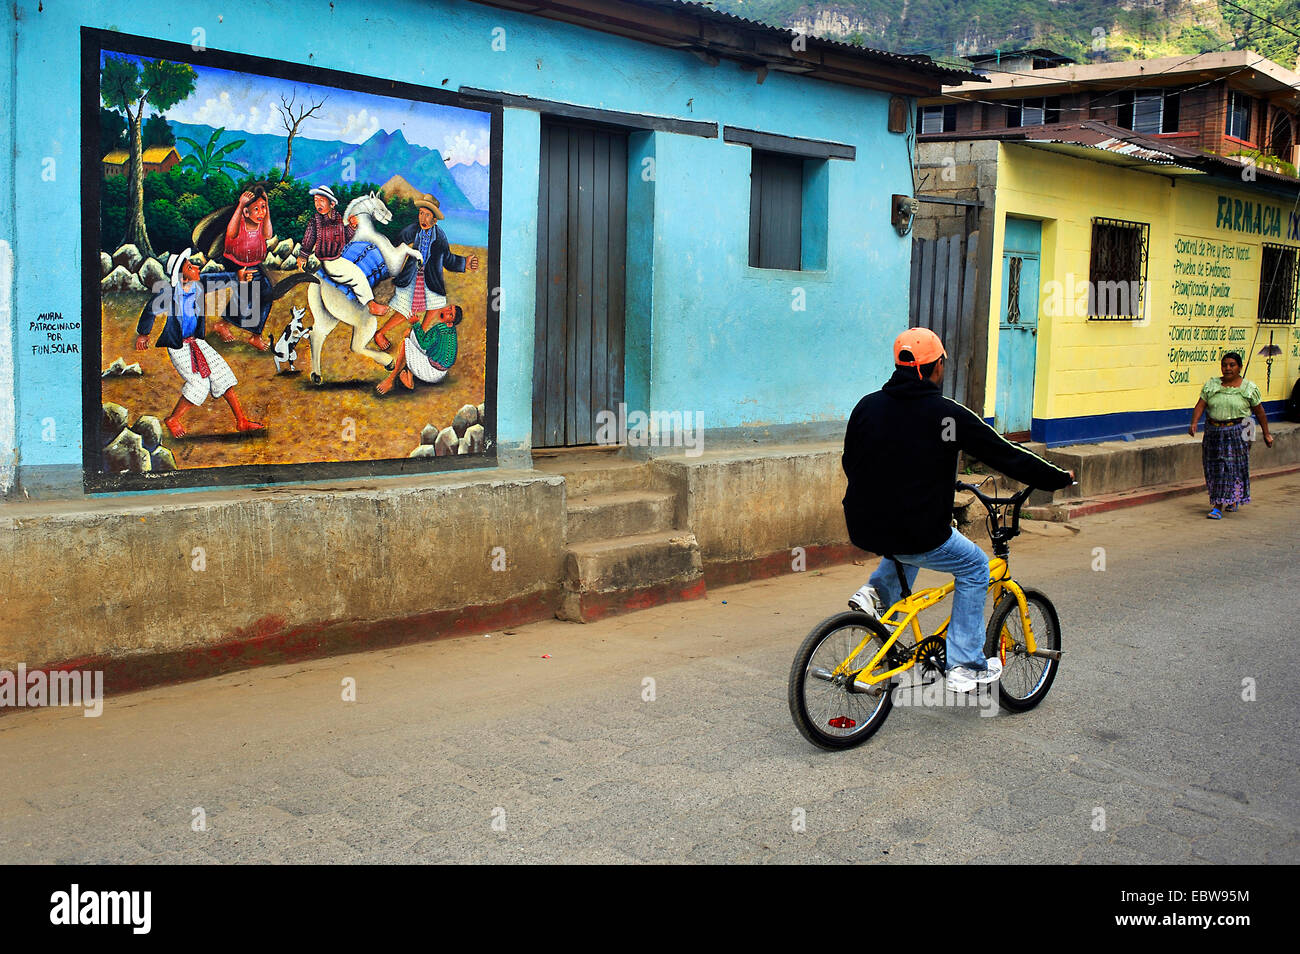 Junge mit dem Fahrrad vorbei an einer auffälligen Wandmalerei bei einer Haus-Fassade, Guatemala, Atitlan See, Santa Cruz la Laguna Stockfoto